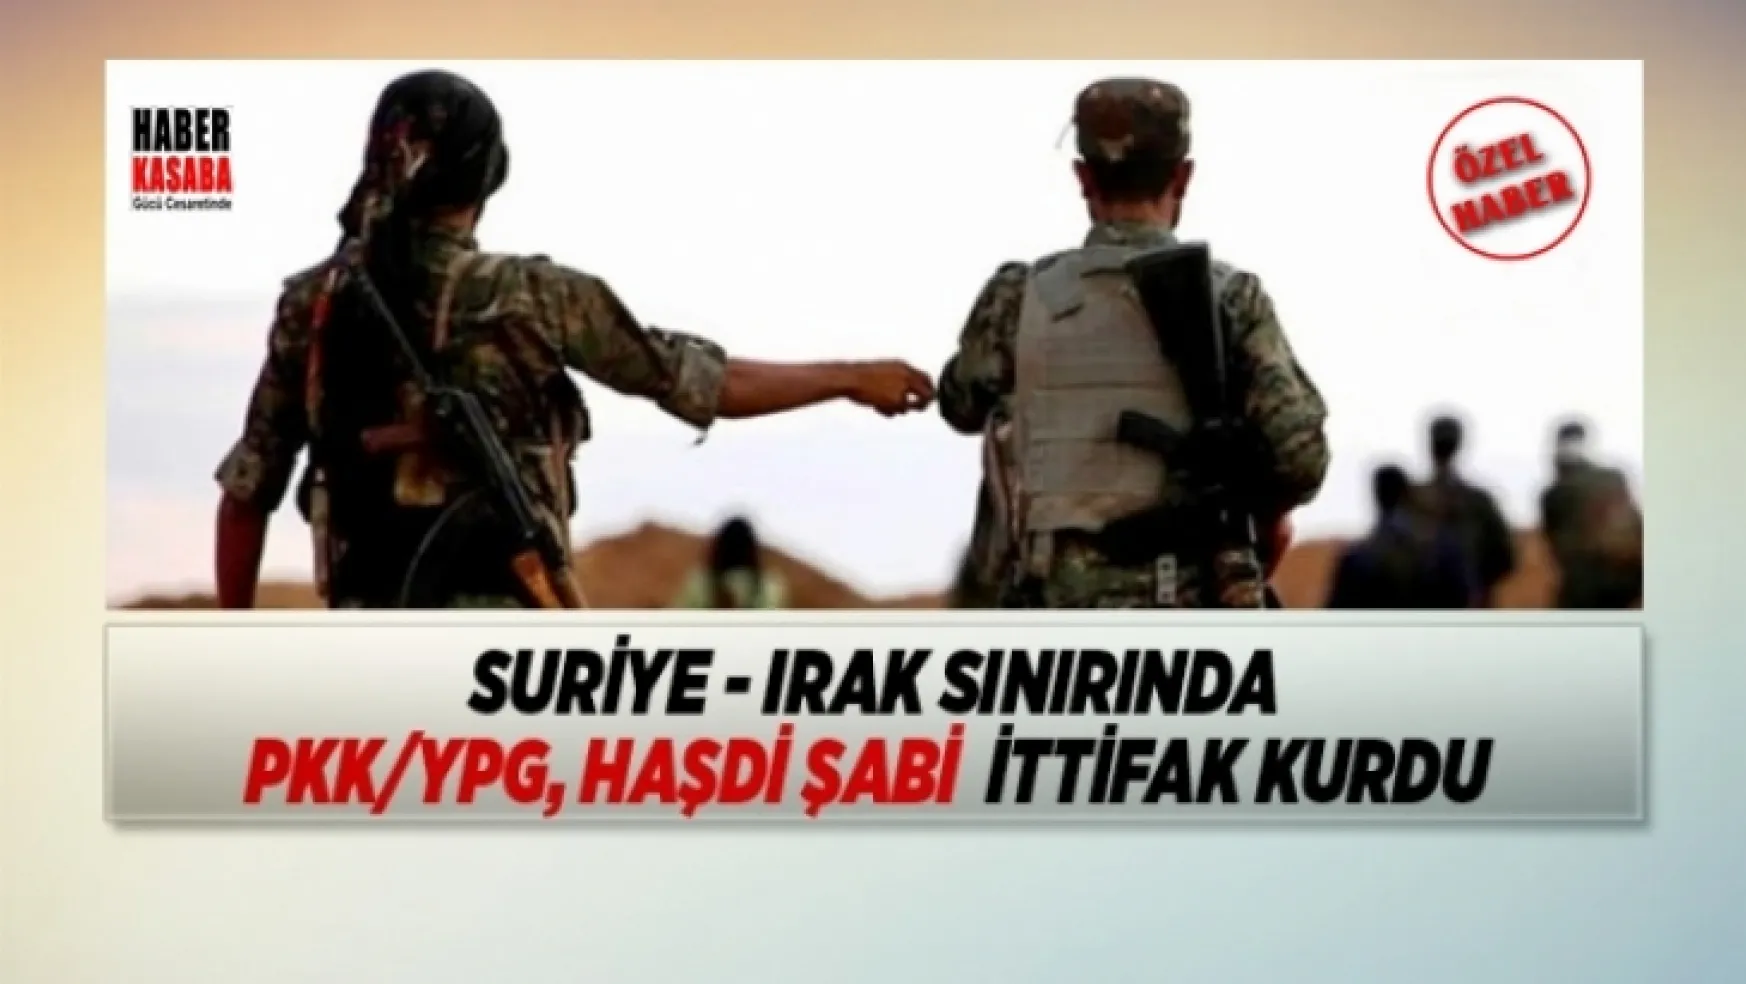 Irak sınırında PKK/YPG, Haşdi Şabi  ittifak kurdu